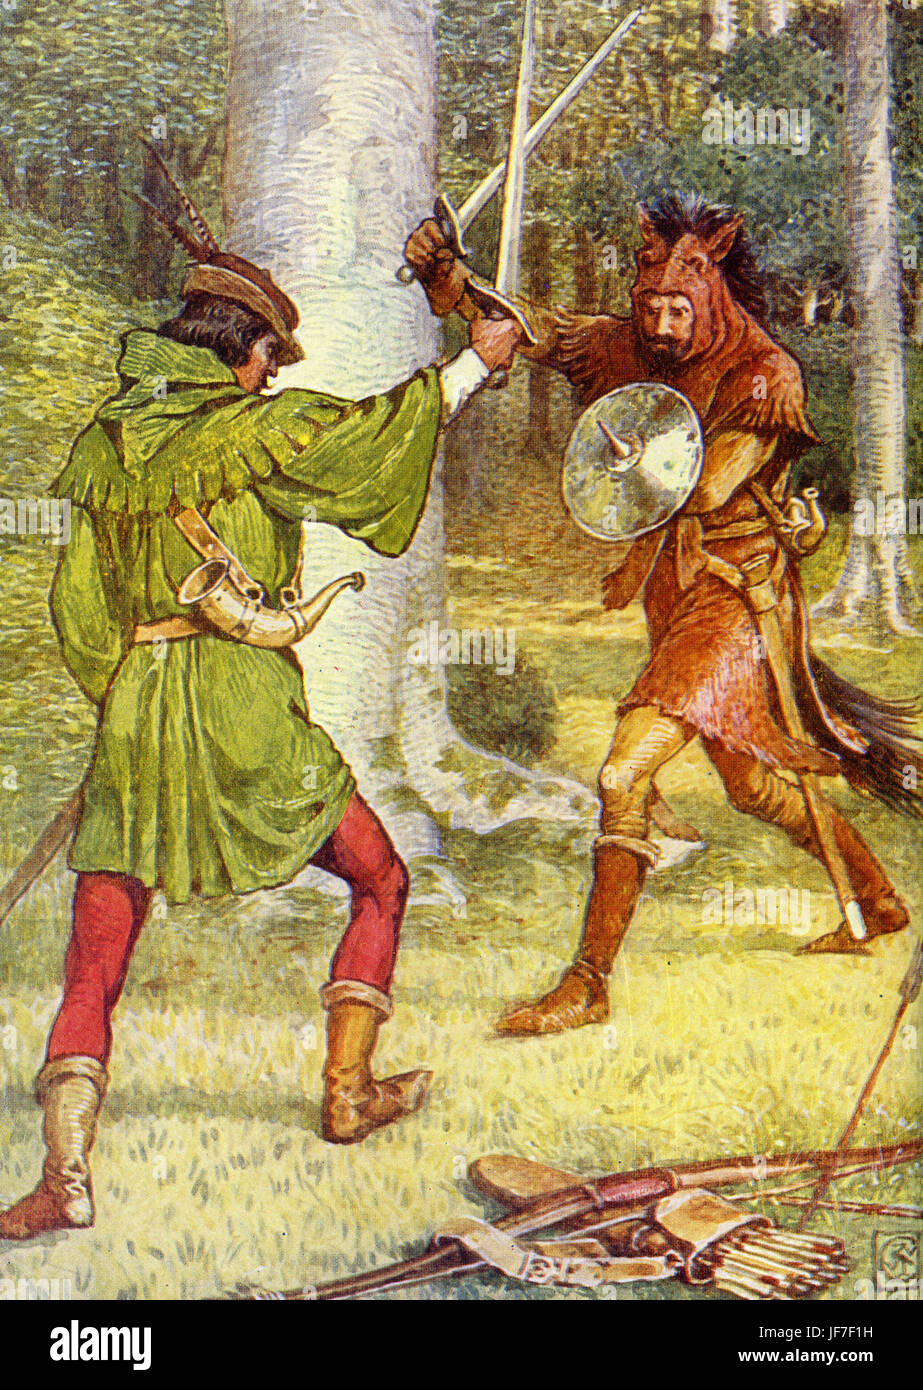 Robin Hood und die Männer von der Greenwood von Henry Gilbert. Bildunterschrift lautet: "Der Klang des Schwertes auf Schwert". (Robin Hood im Kampf). Illustriert von Walter Crane. C.1912 Stockfoto